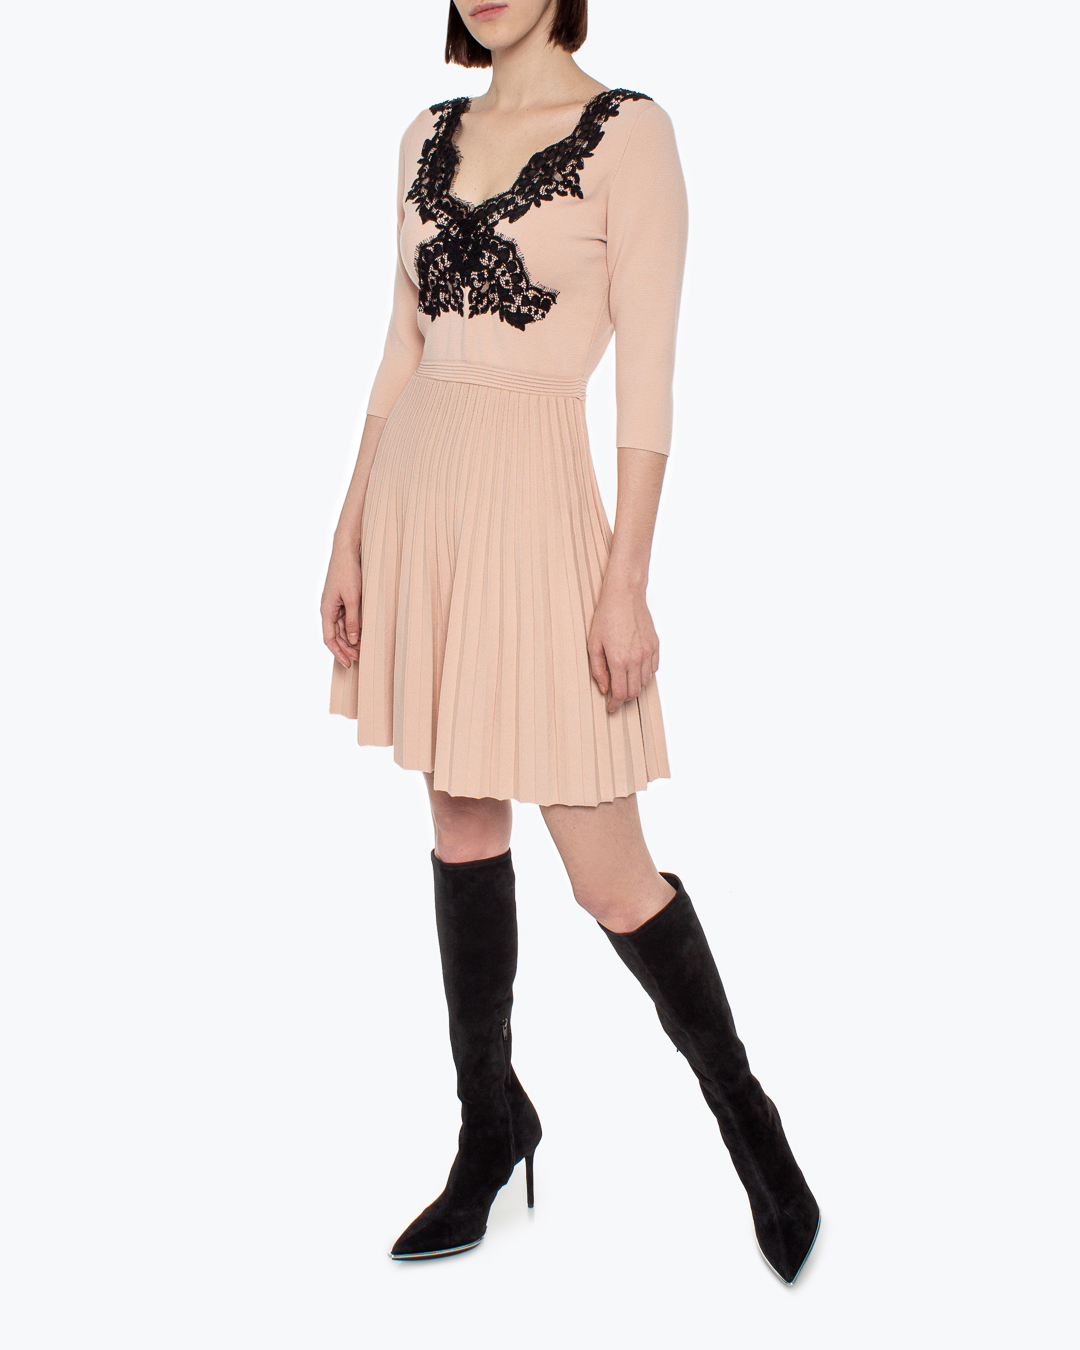 платье Anna Molinari 7A043A розовый+черный l, размер l, цвет розовый+черный 7A043A розовый+черный l - фото 2